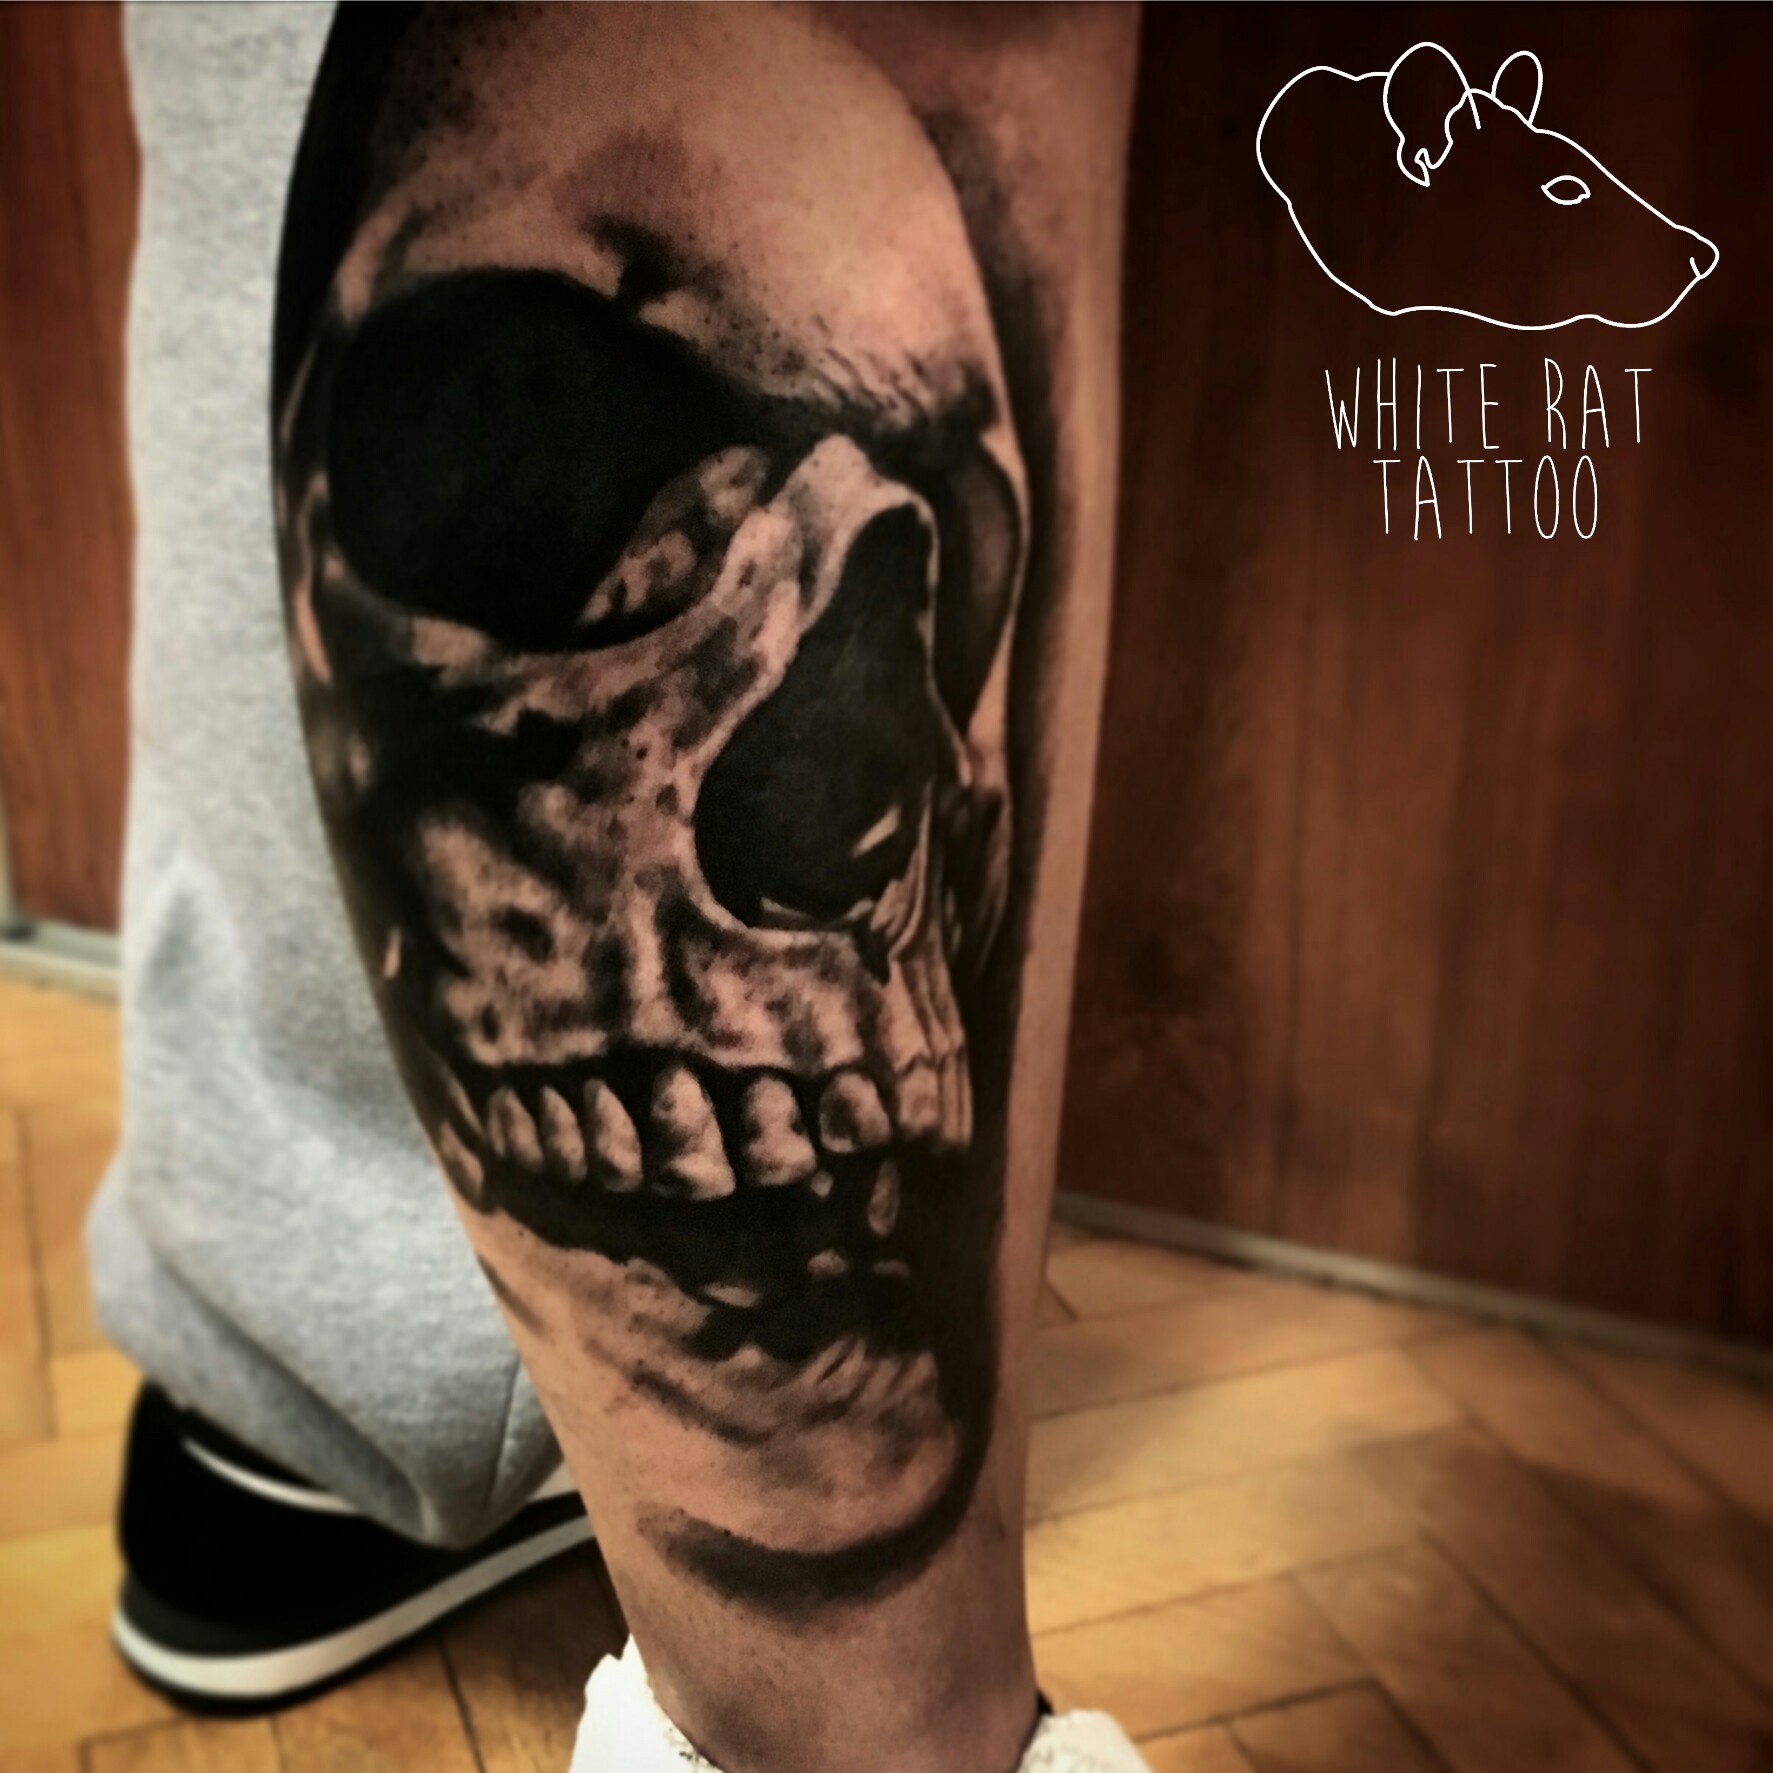 Tatuaż czaszki wykonany przez Agatę Kacperczyk w studio tatuażu White Rat Tattoo Warszawa